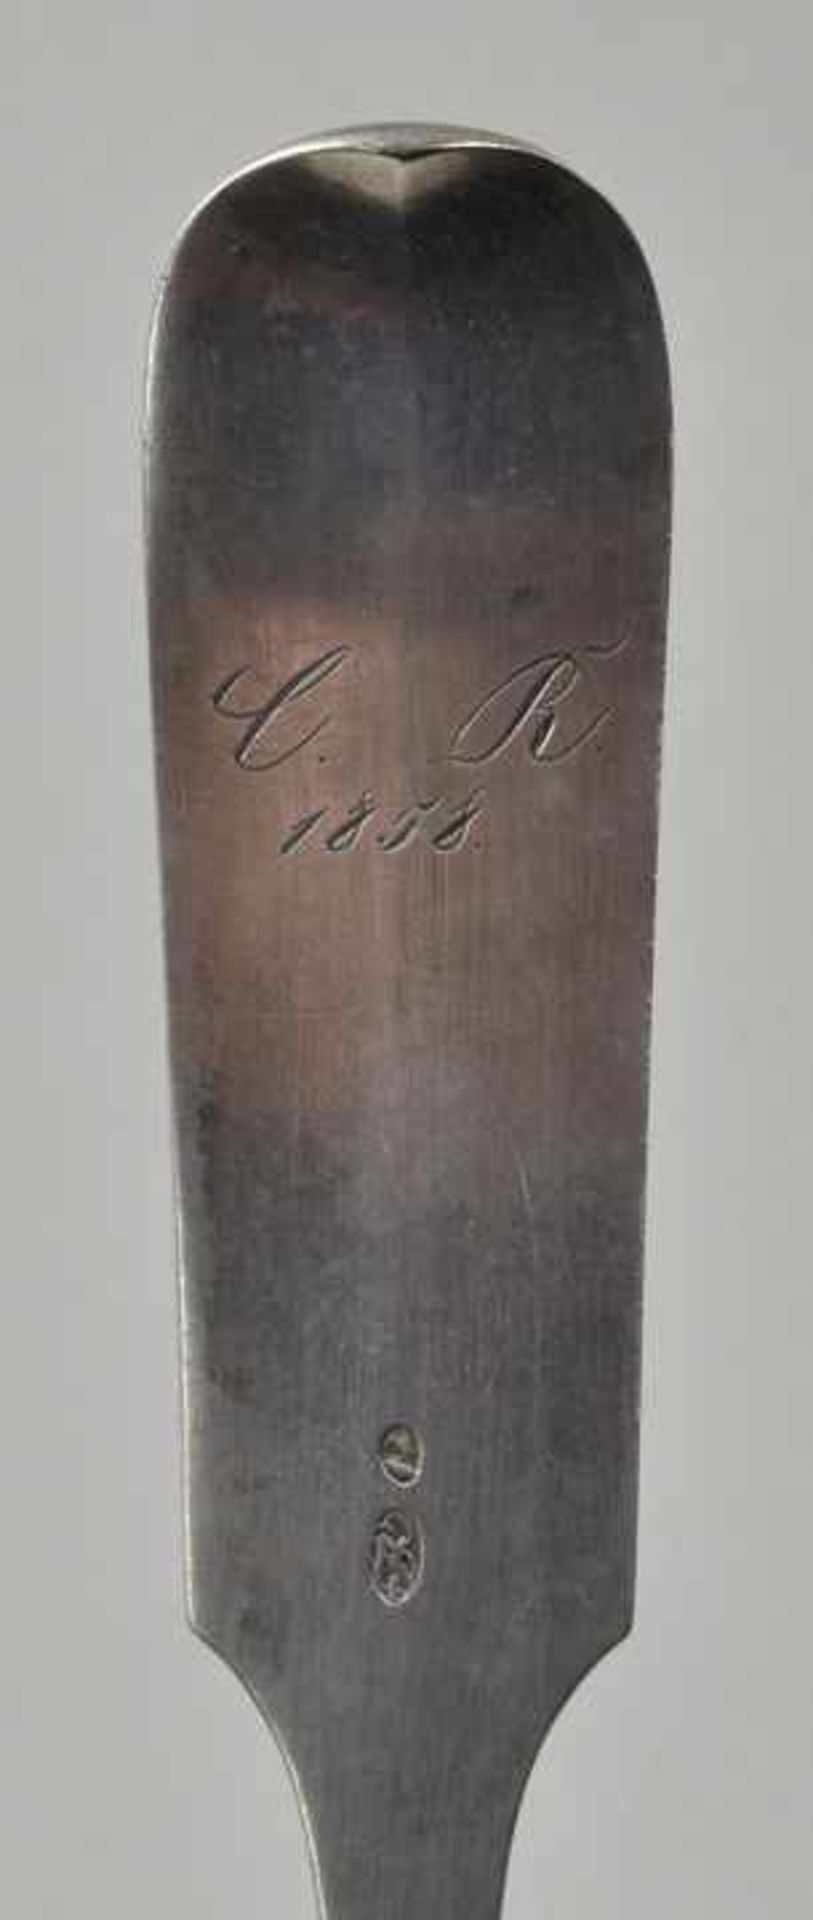 Gemüselöffel, Mitte 19. Jh. Silber. Spatelform, Stielrückseite graviert "C.R. 1858". Feingehalts-und - Bild 2 aus 2